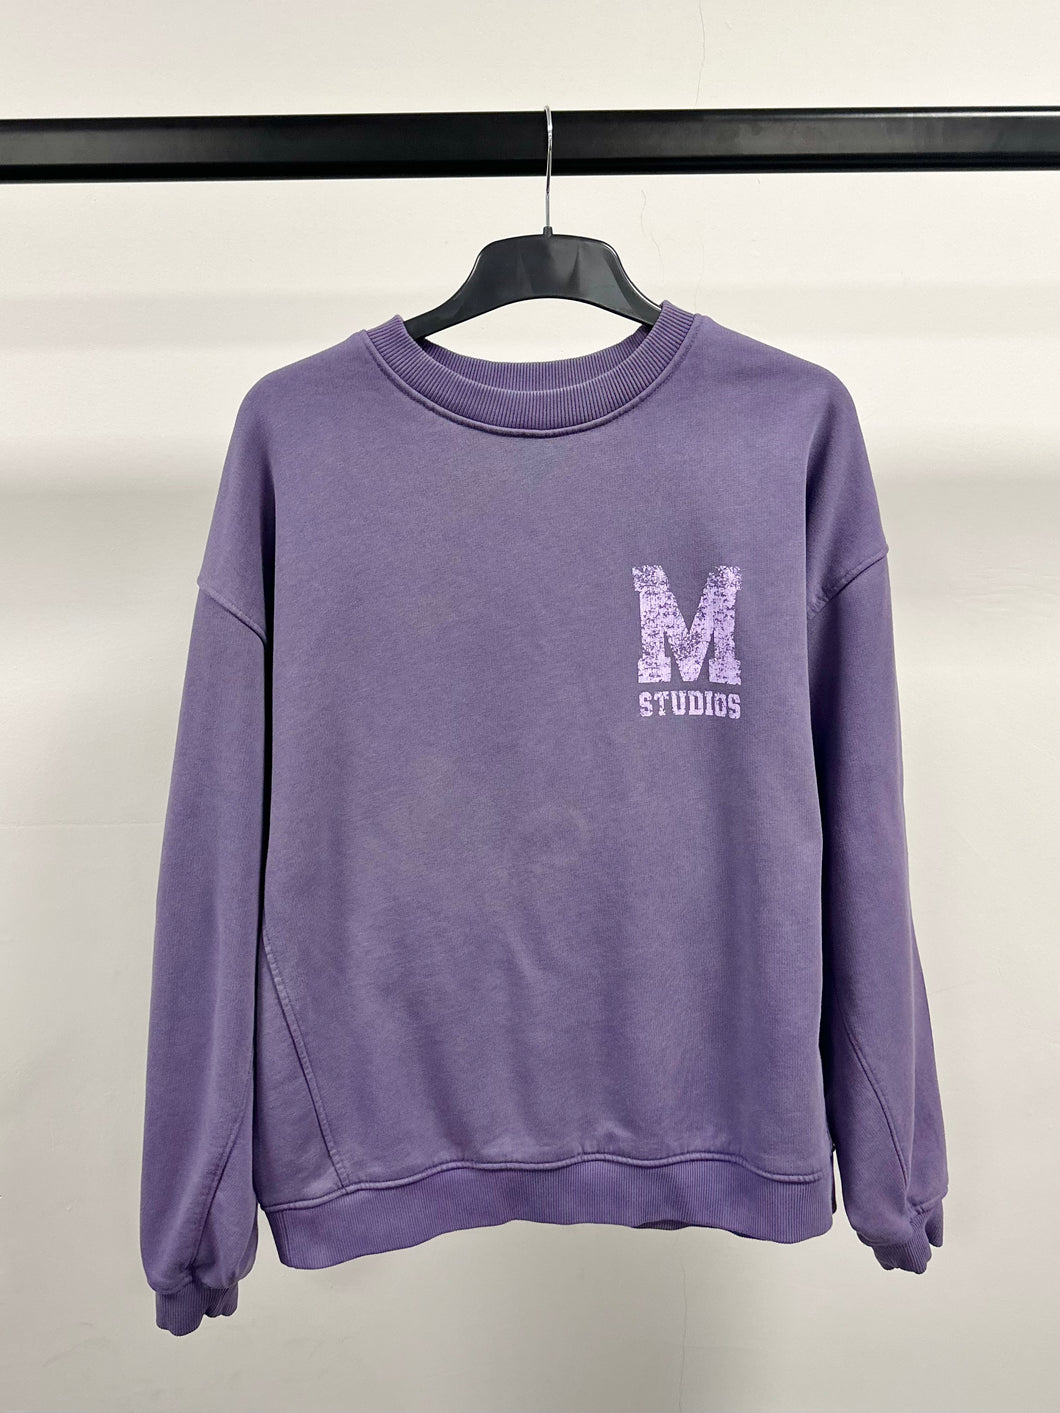 Washed Purple M Sweatshirt.